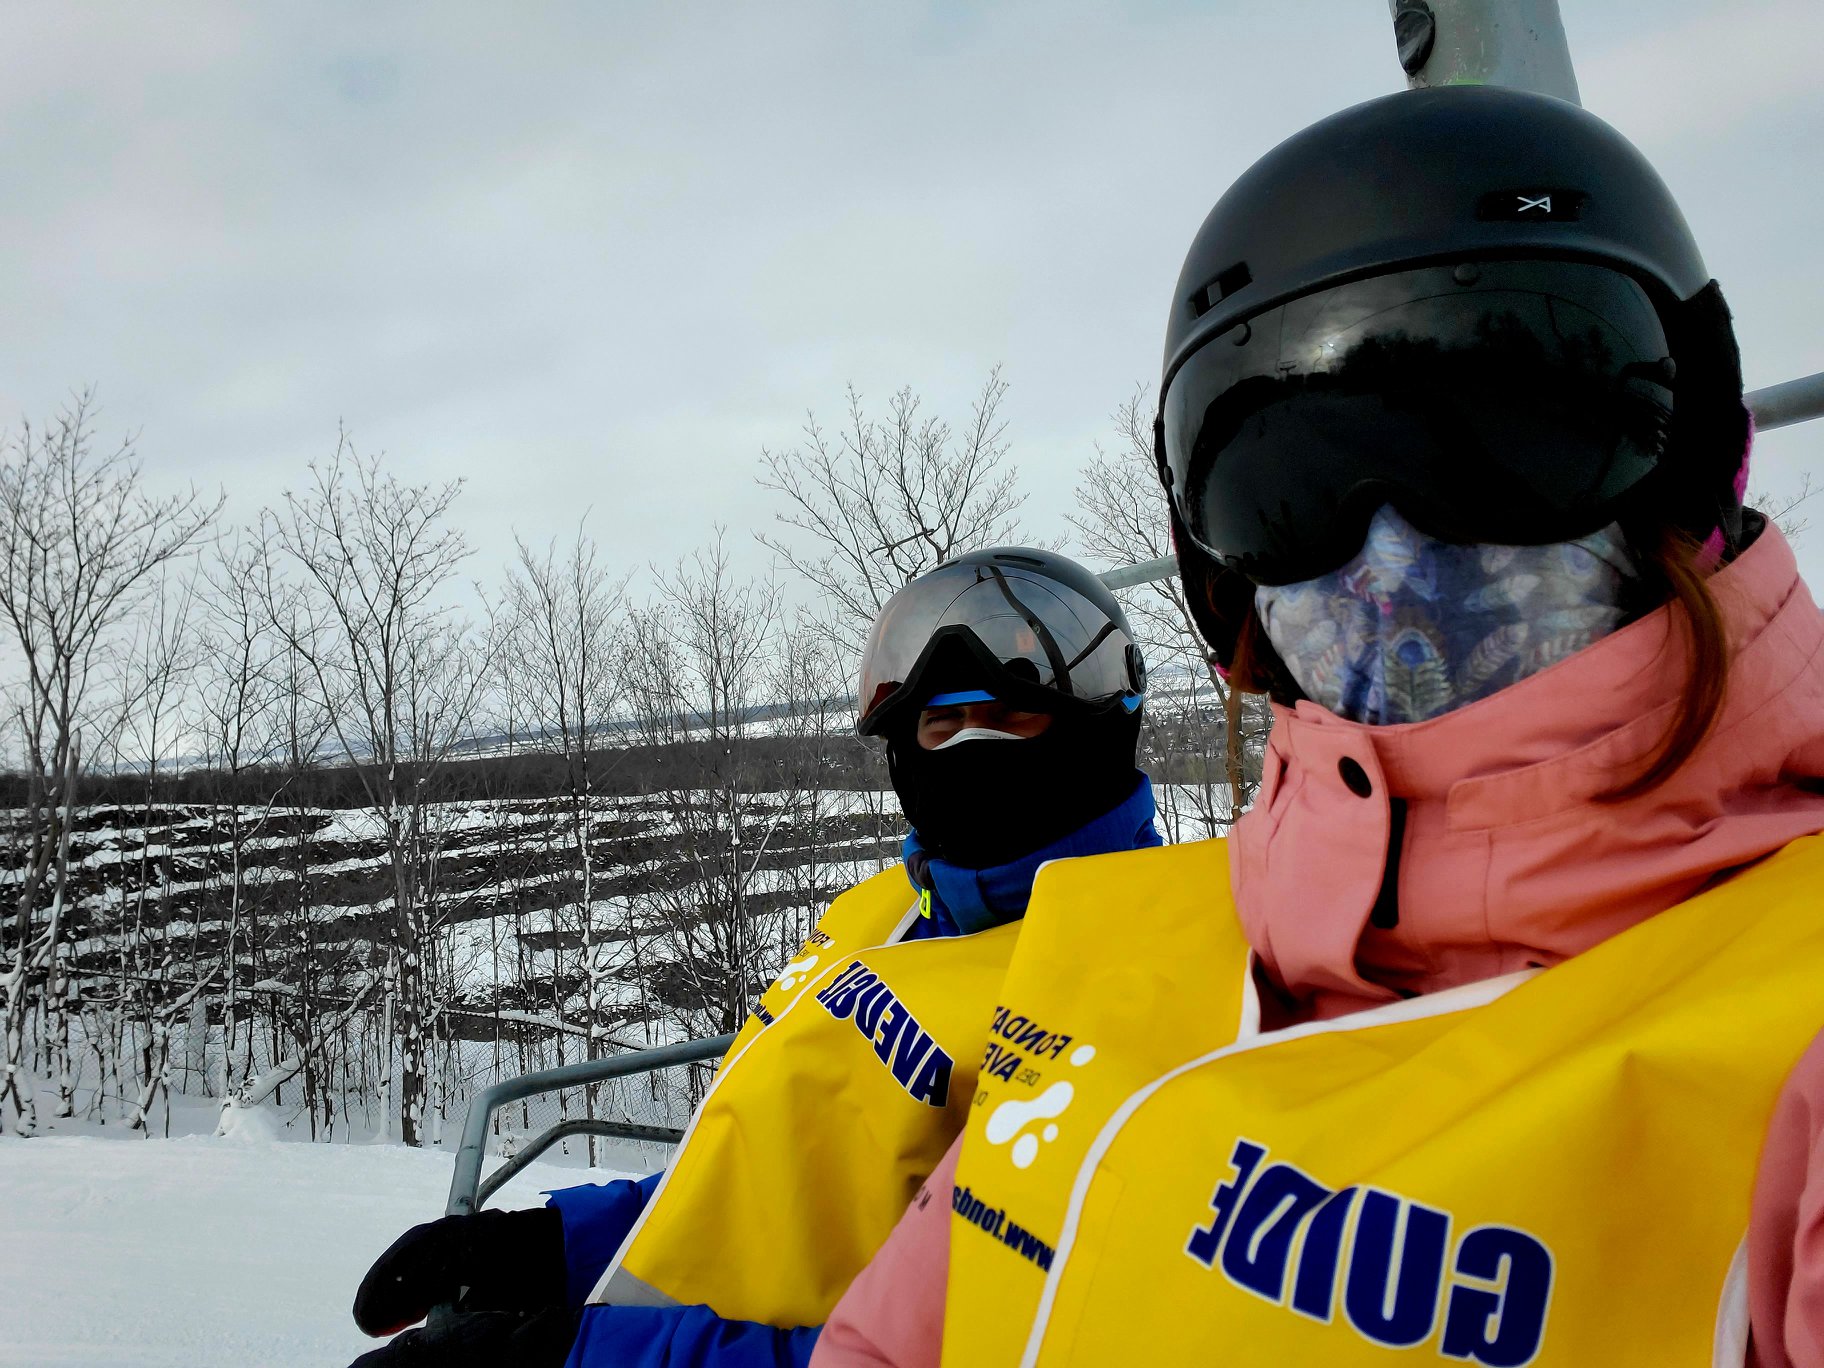 un égoportrait d’une accompagnatrice et d’un participant dans un remonte-pente lors d’une sortie de ski. Les deux individus portent un couvre-visage. Voir moins — partage une actualité COVID-19.